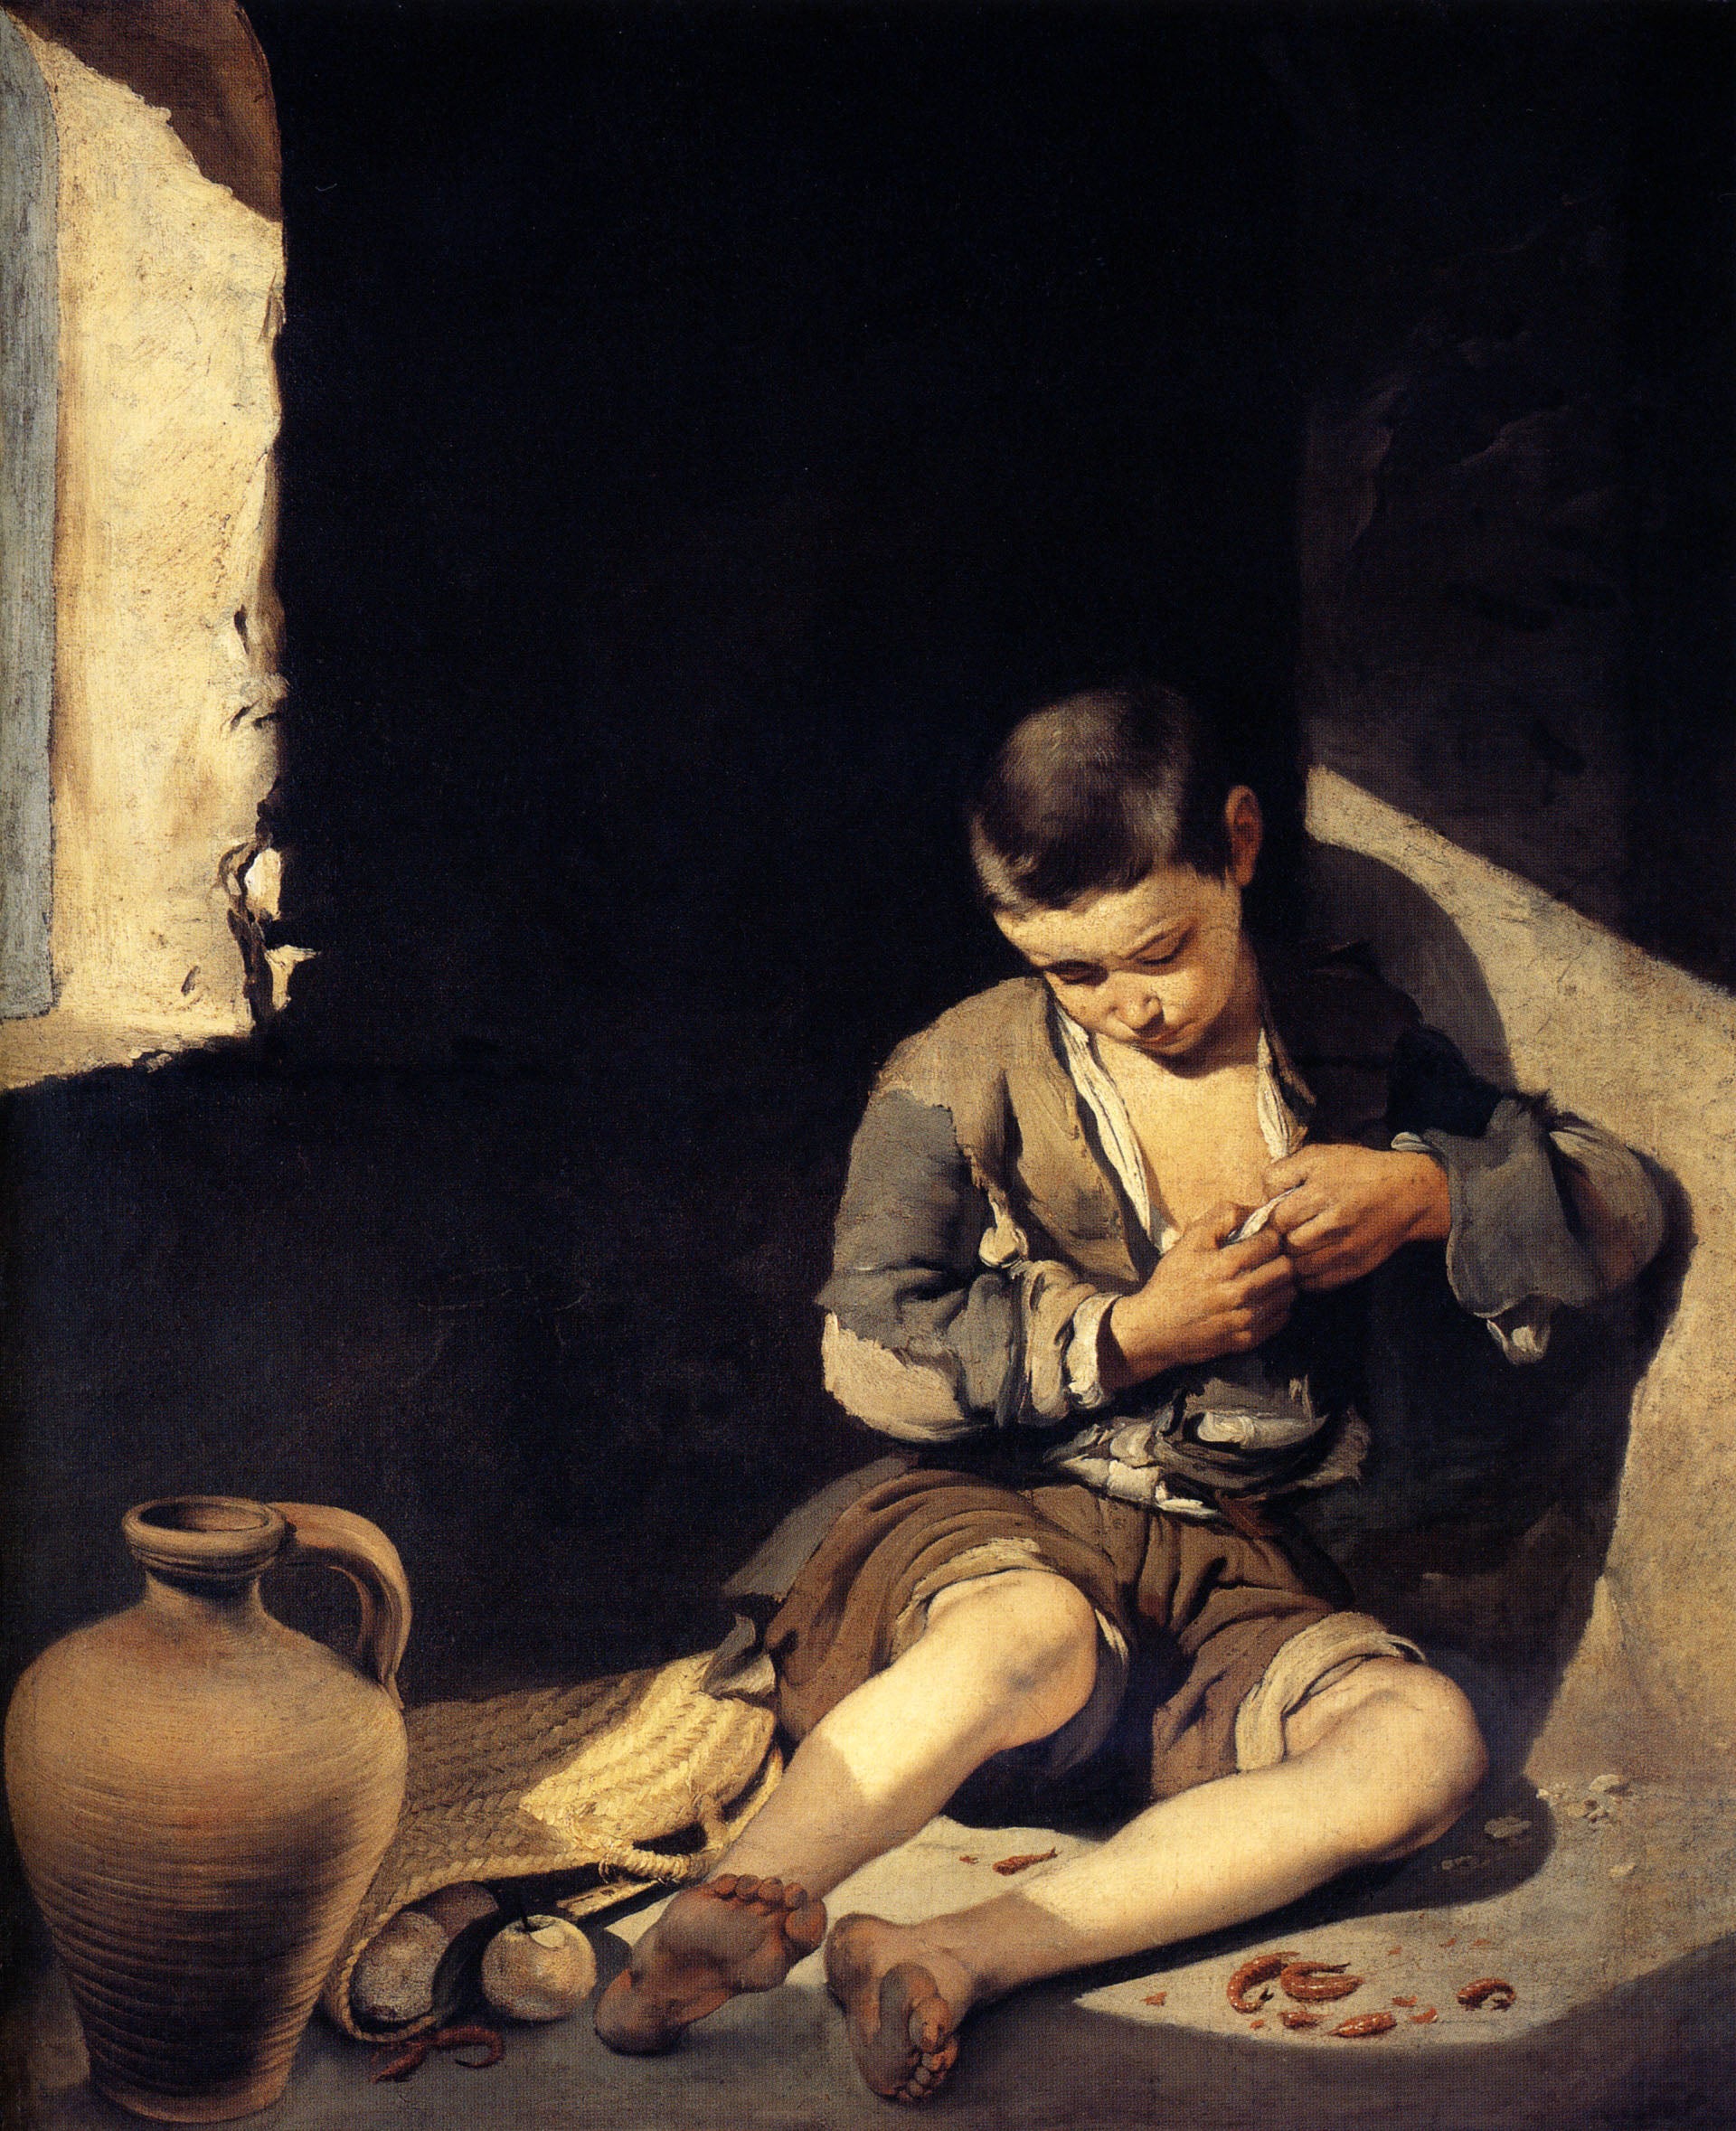 Le jeune mendiant - Bartolomé Esteban Murillo